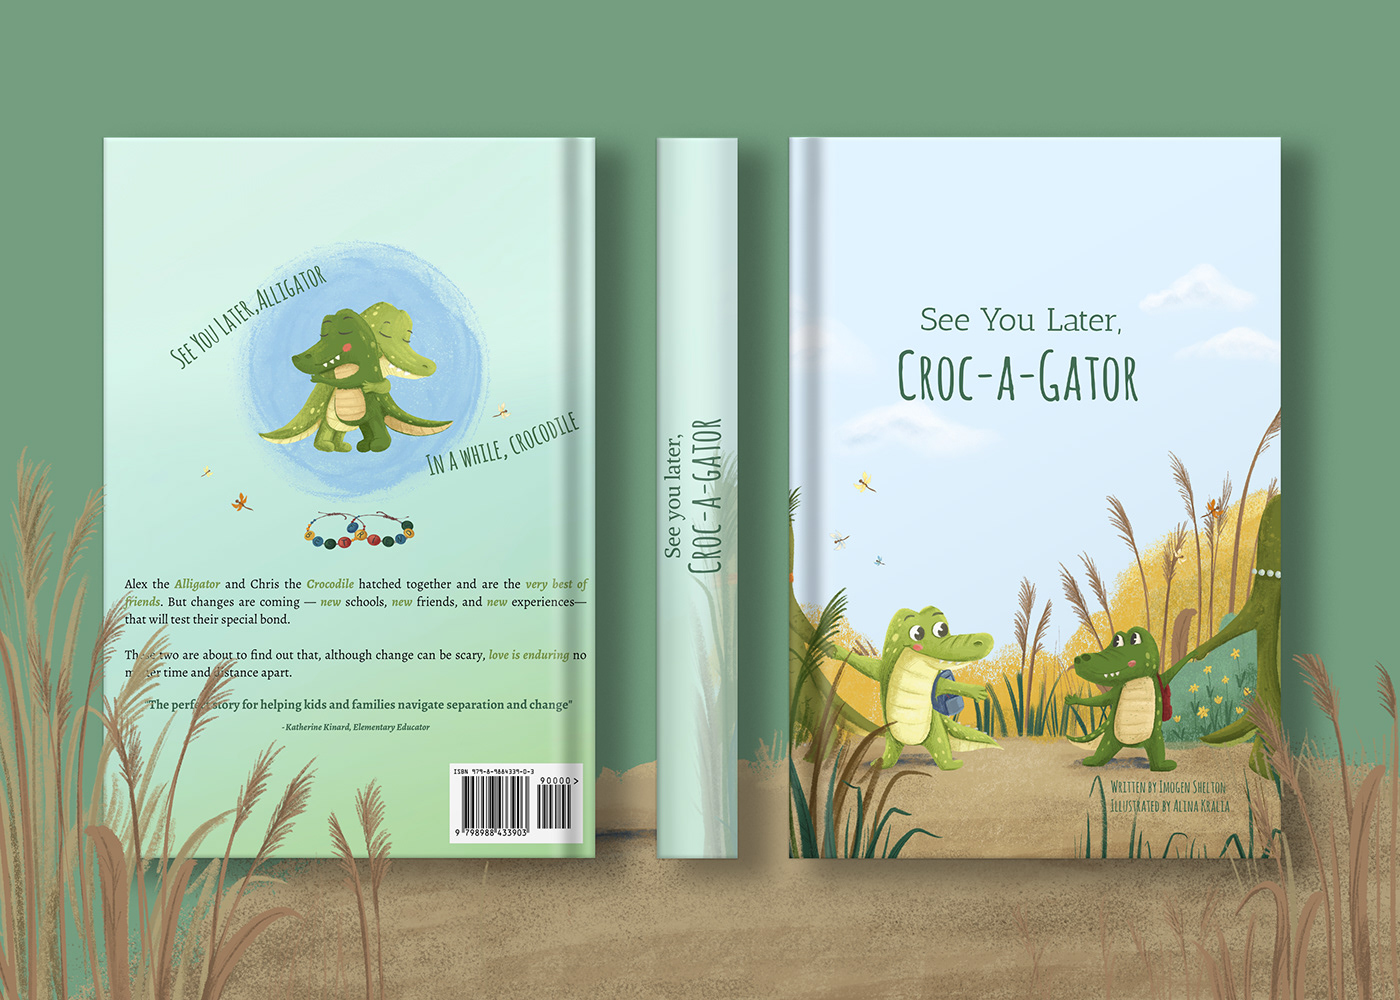 Child art children's book children illustration Picture book concept art book cover book illustration Character design  adobe illustrator